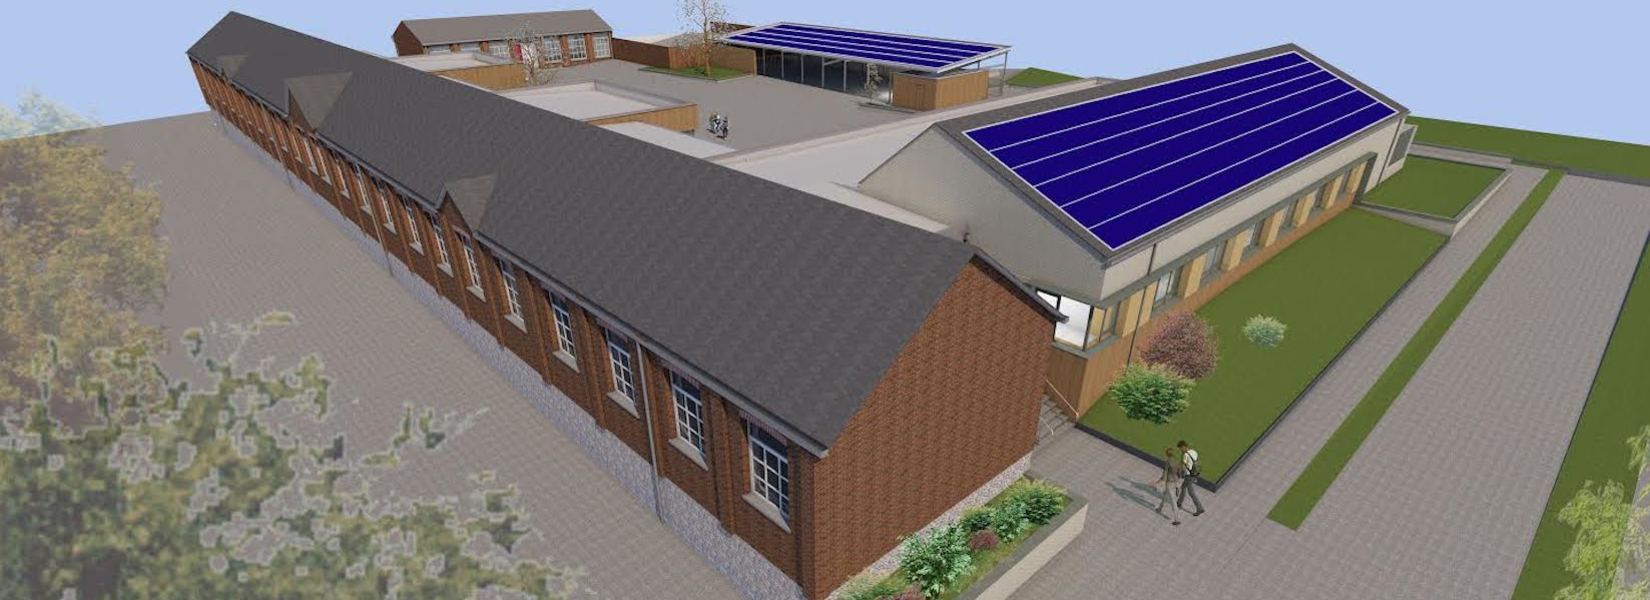 Fourmies mise sur le financement participatif pour des toitures solaires d’écoles